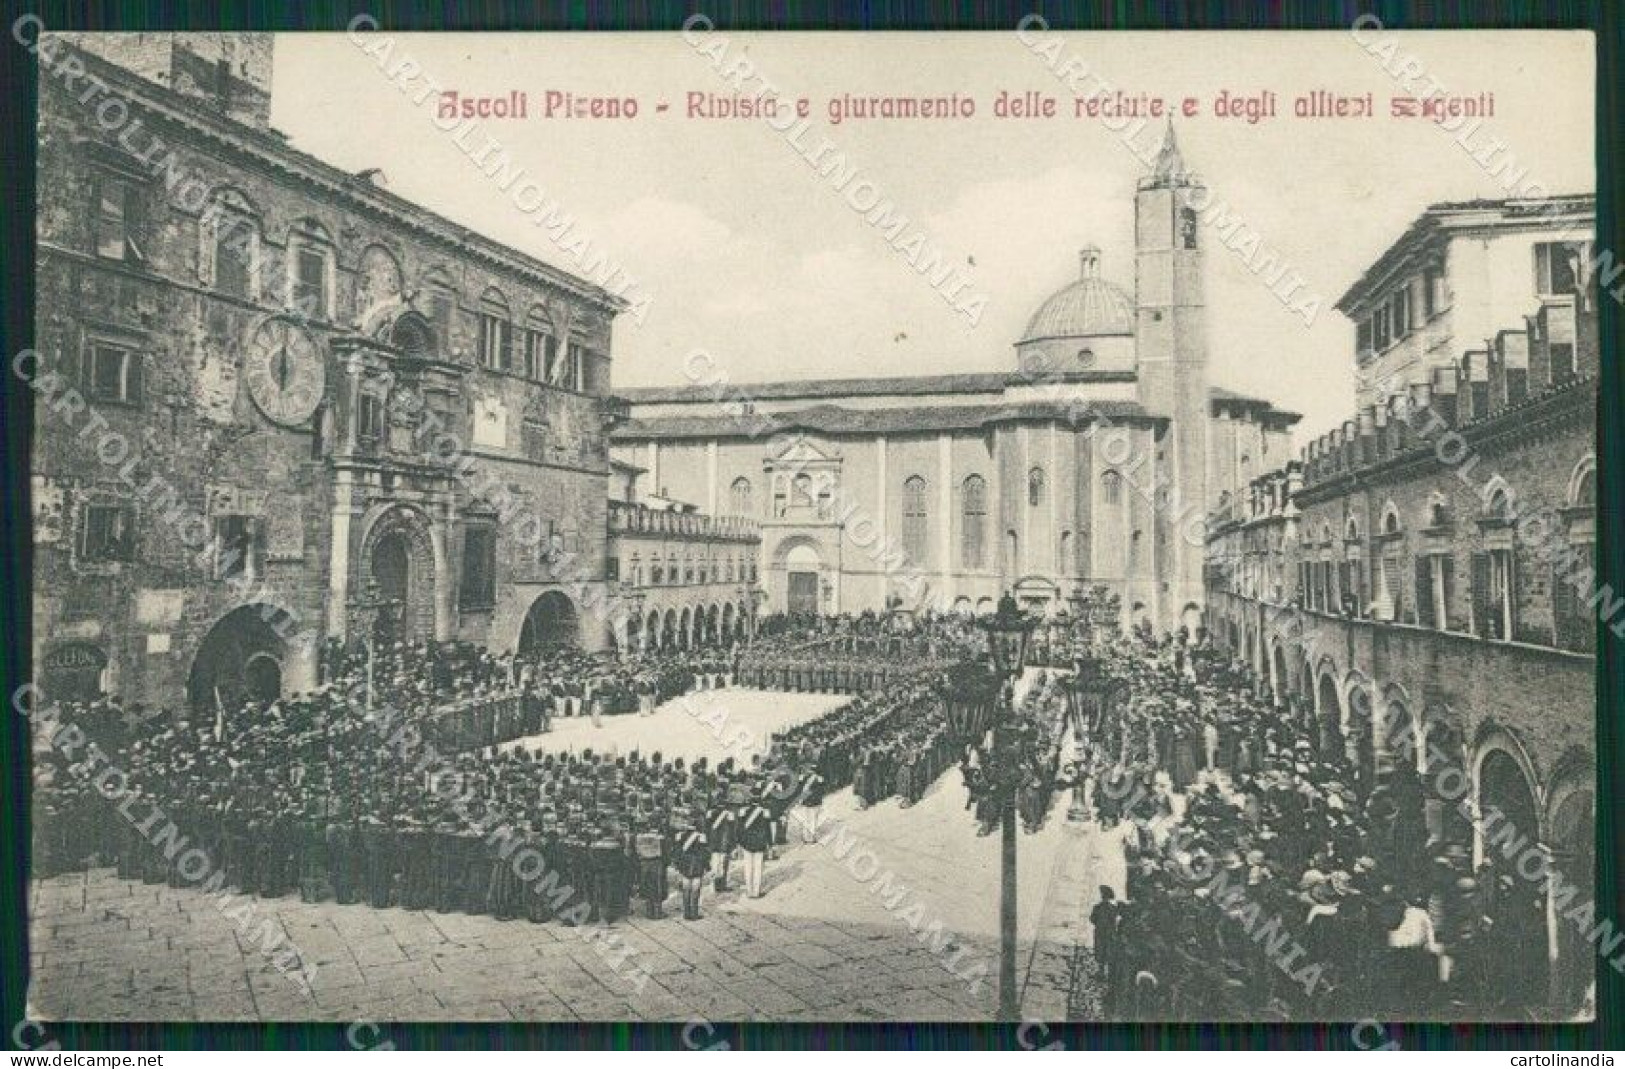 Ascoli Piceno Città Militari Cartolina QK6358 - Ascoli Piceno